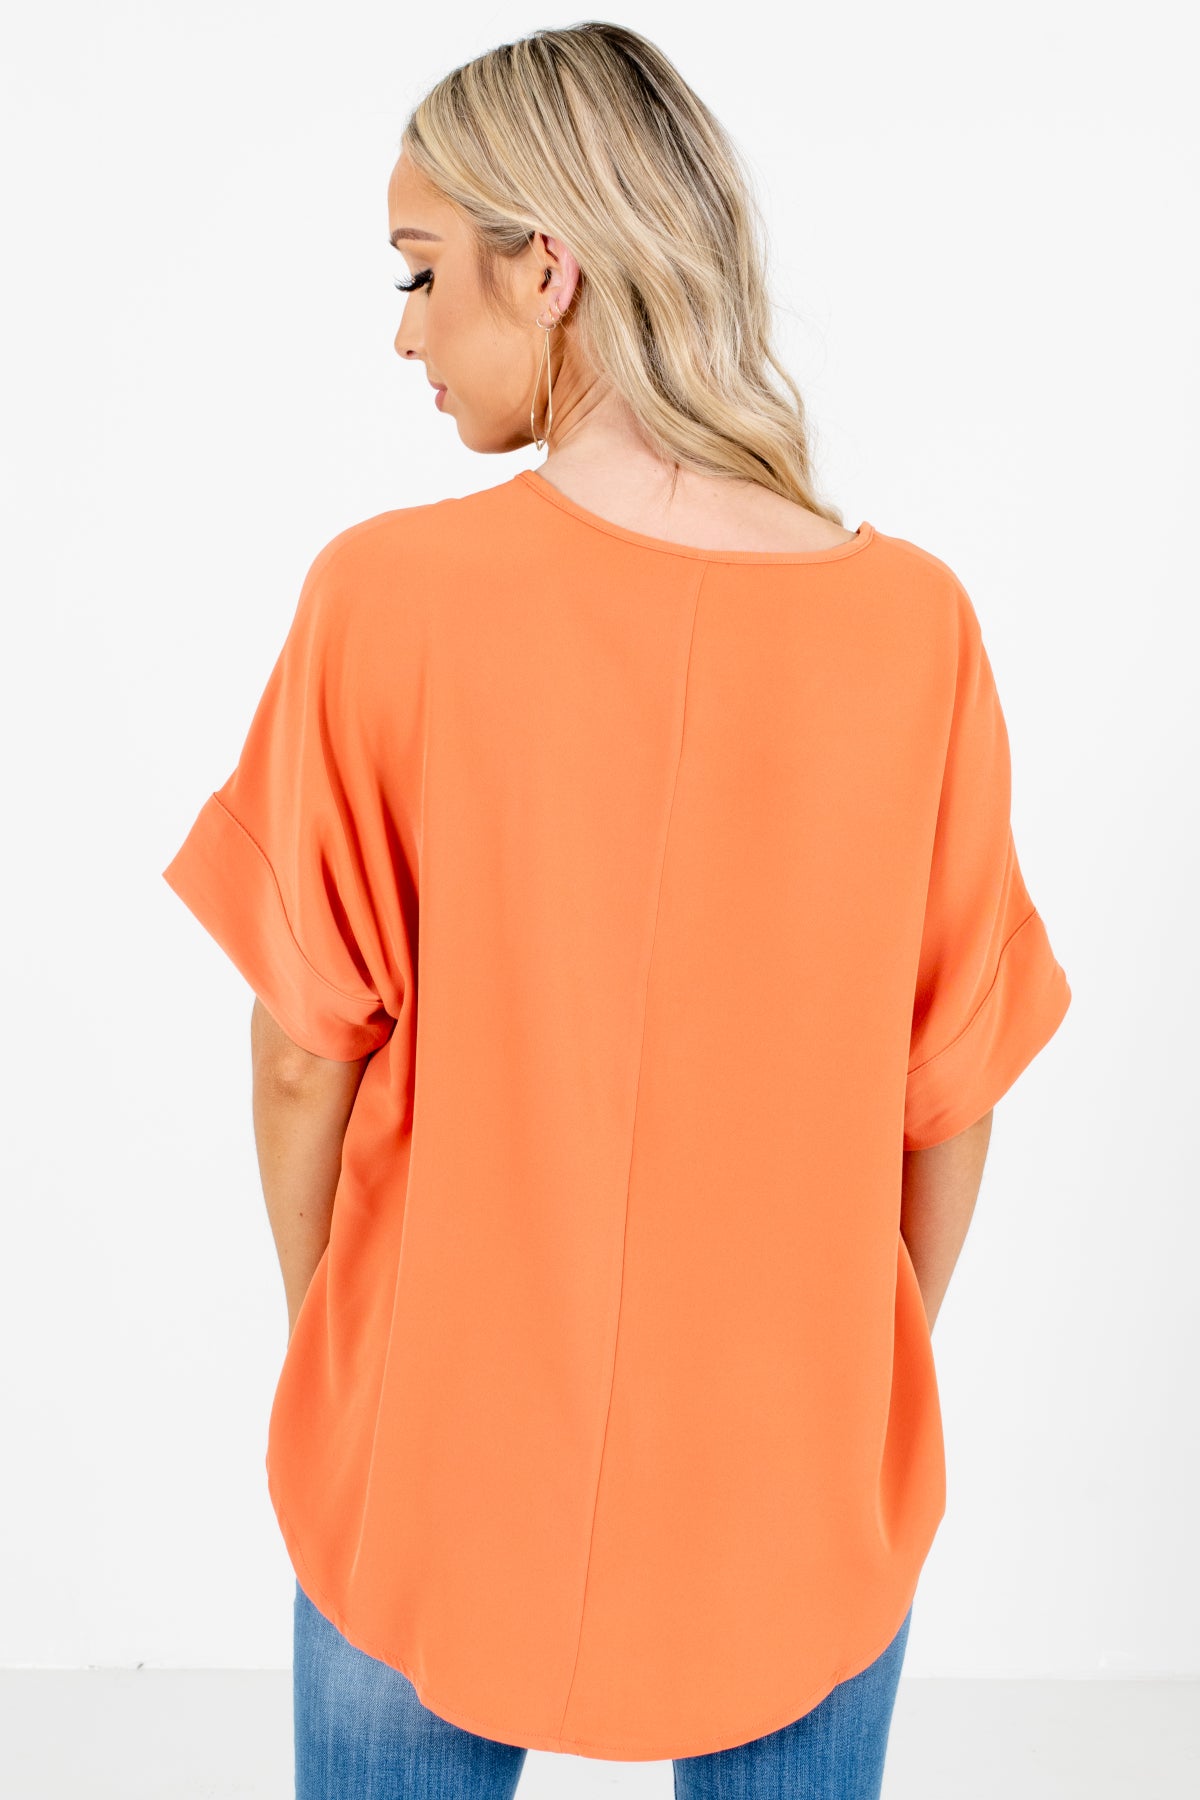 Solid Orange Top for Women